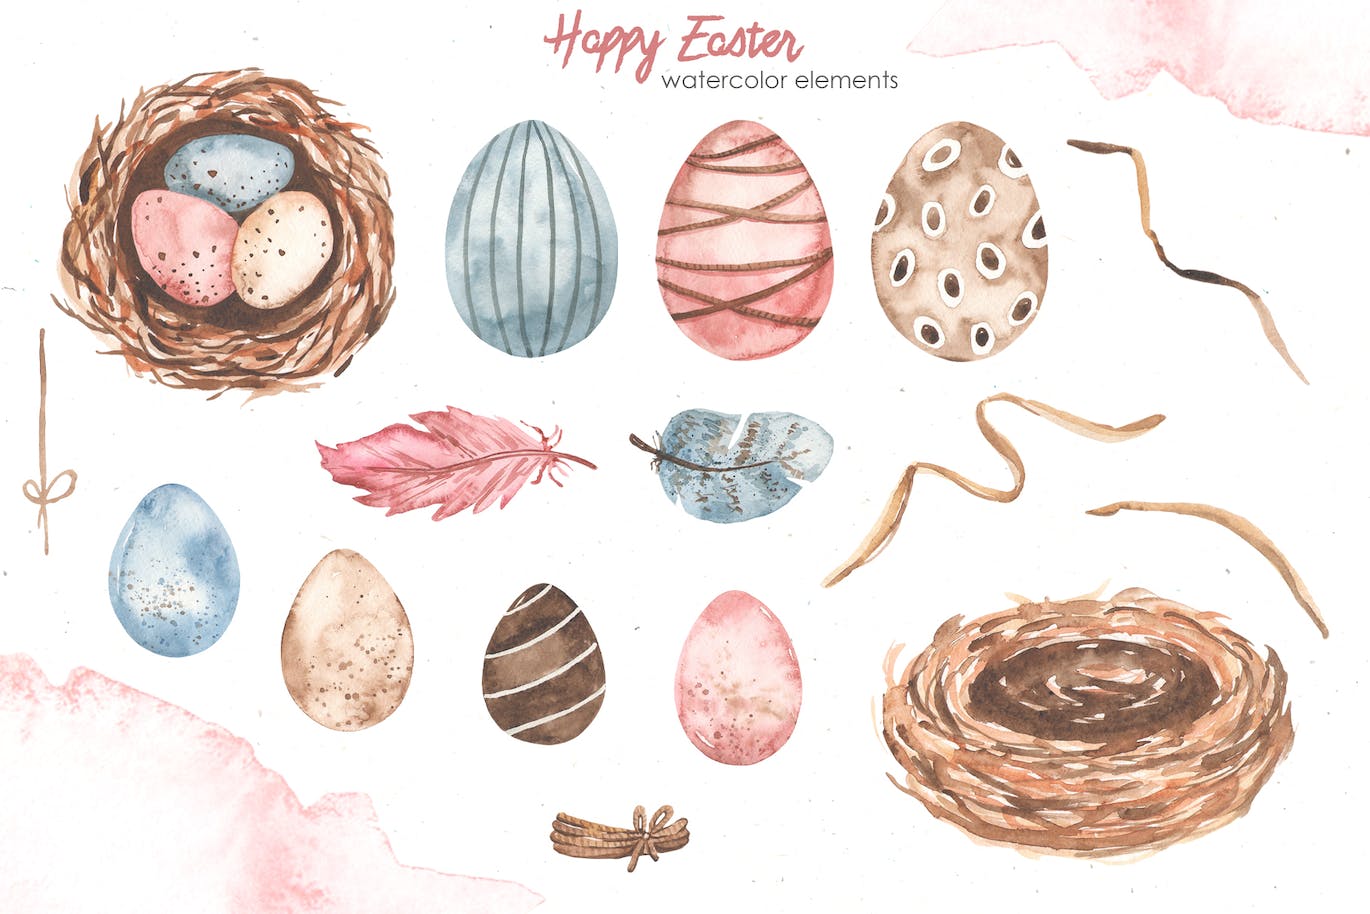 复活节快乐元素水彩画集 Happy Easter watercolor-10